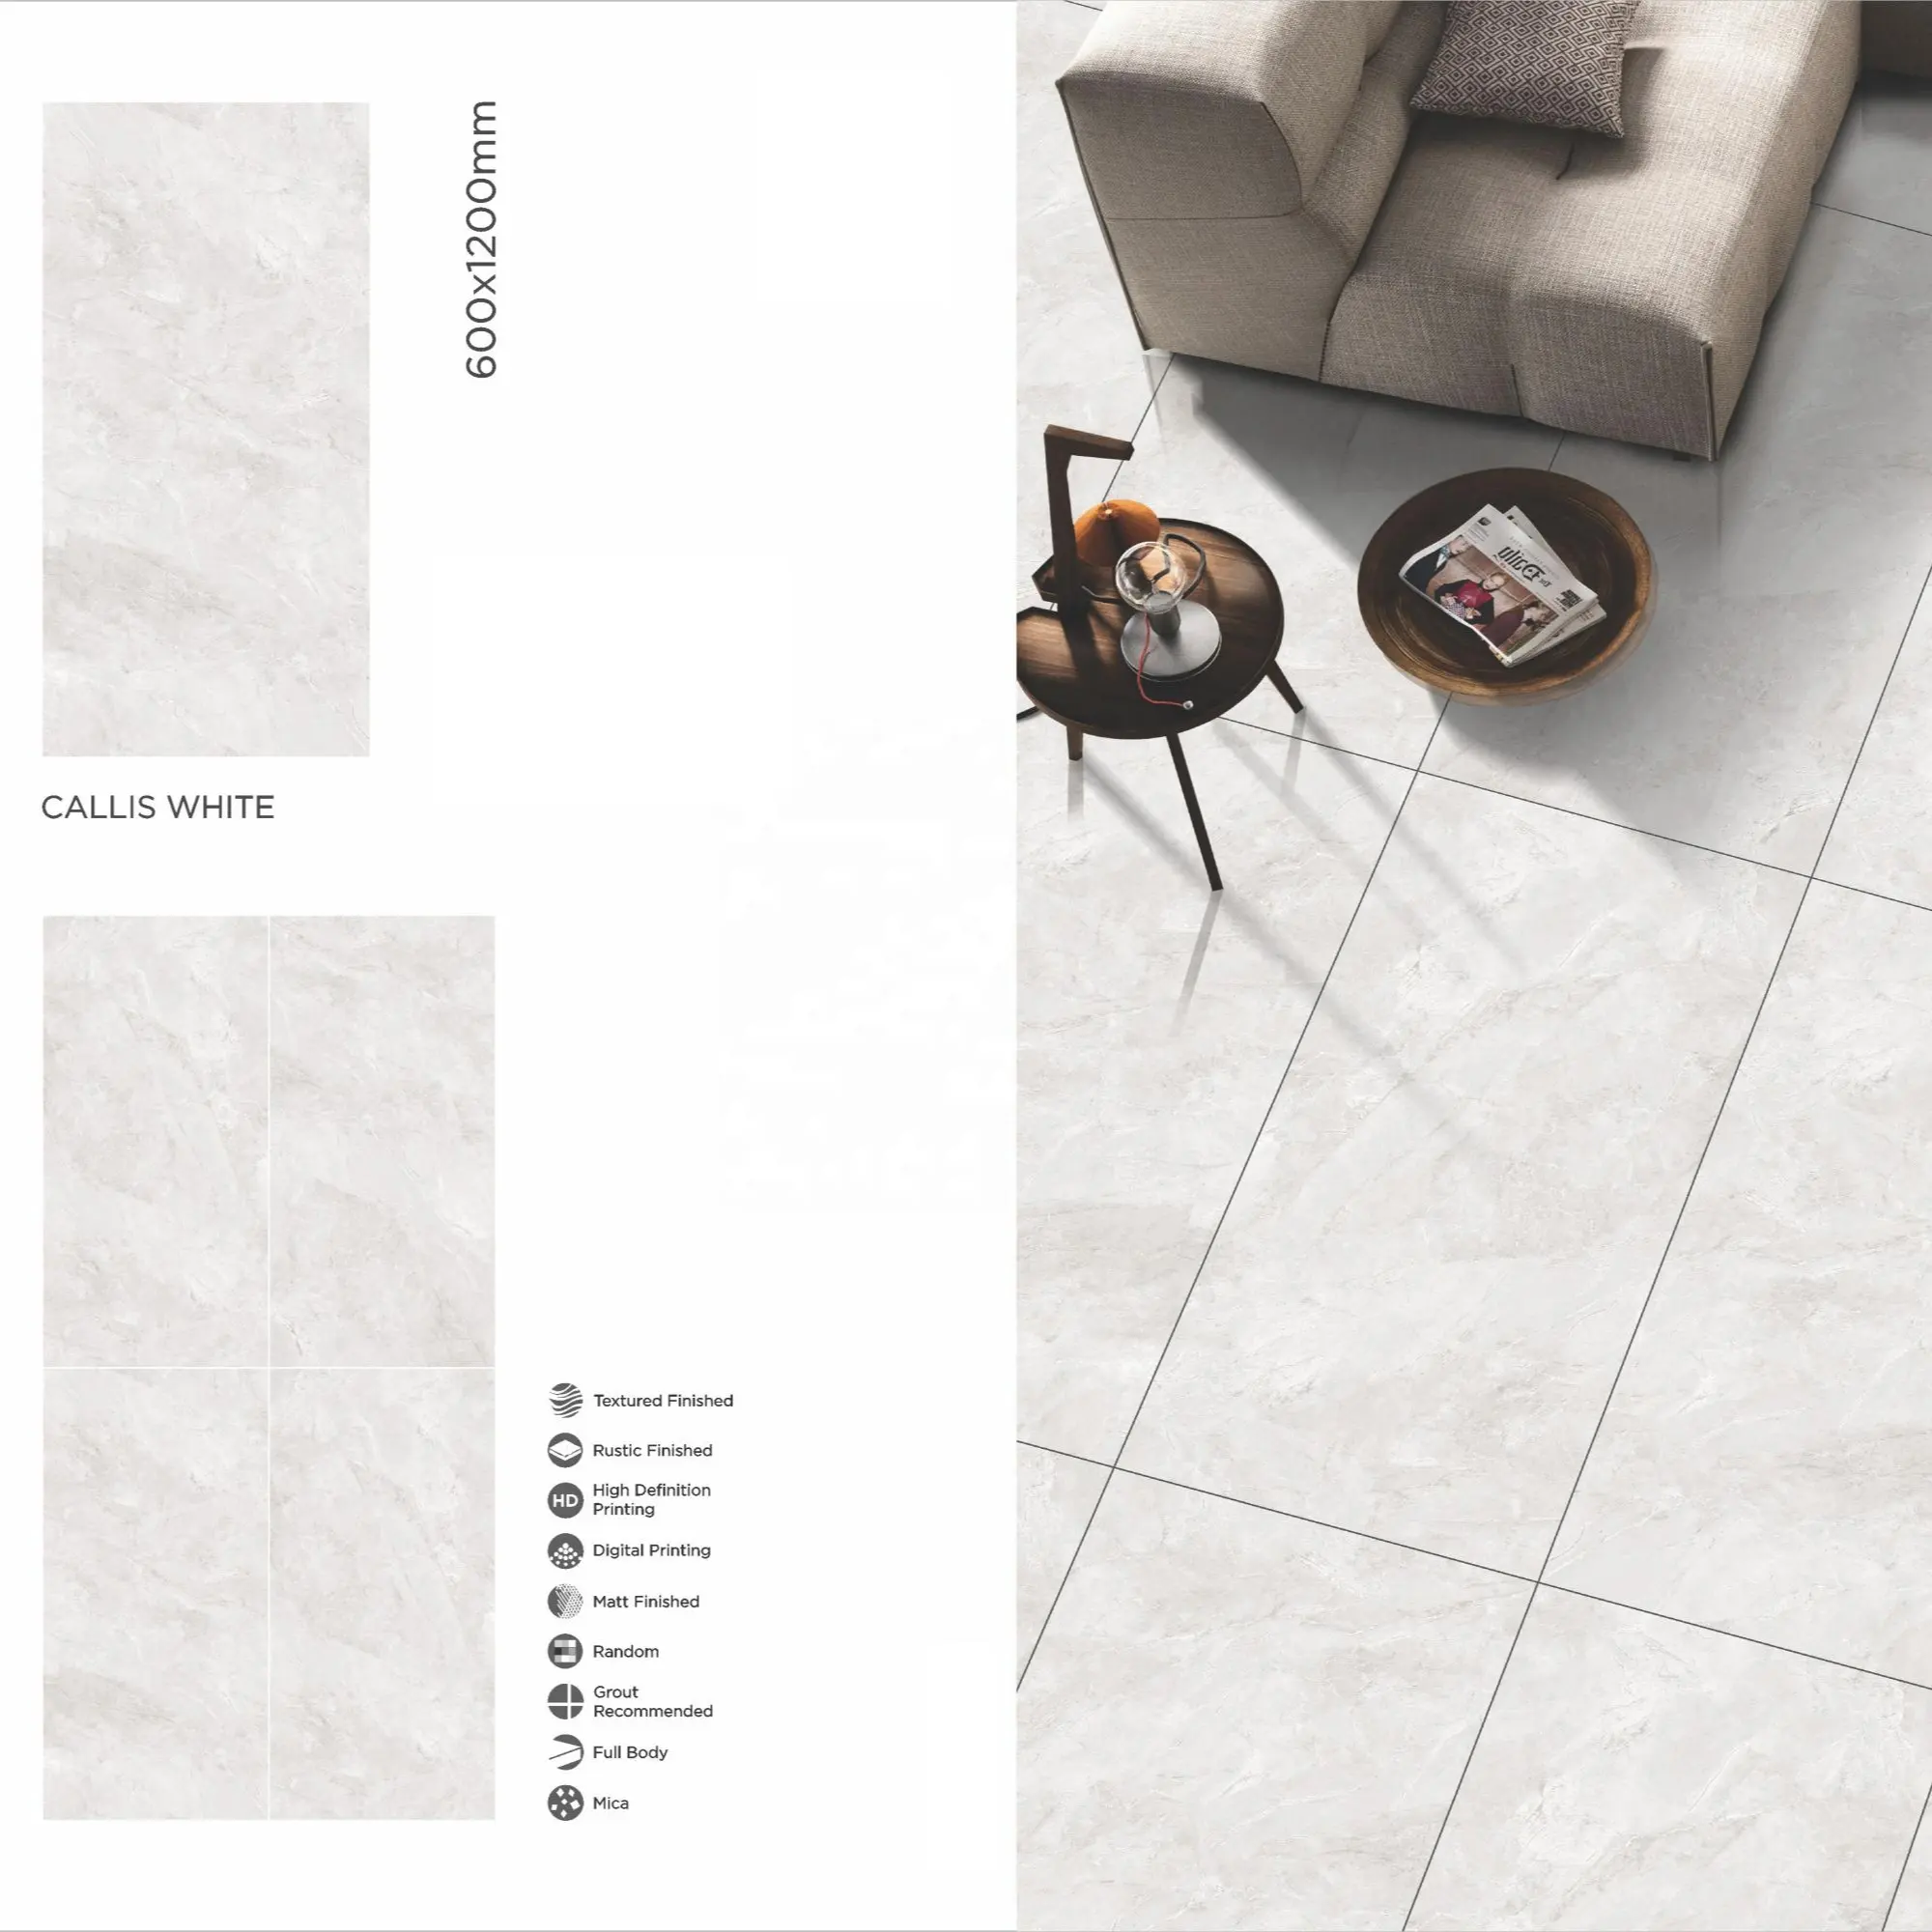 Qualità Callis White 60x120 gres porcellanato spagnolo 2x4 piastrelle per pavimenti in granito 600x1200 in America filippine Vietnam sud Africa